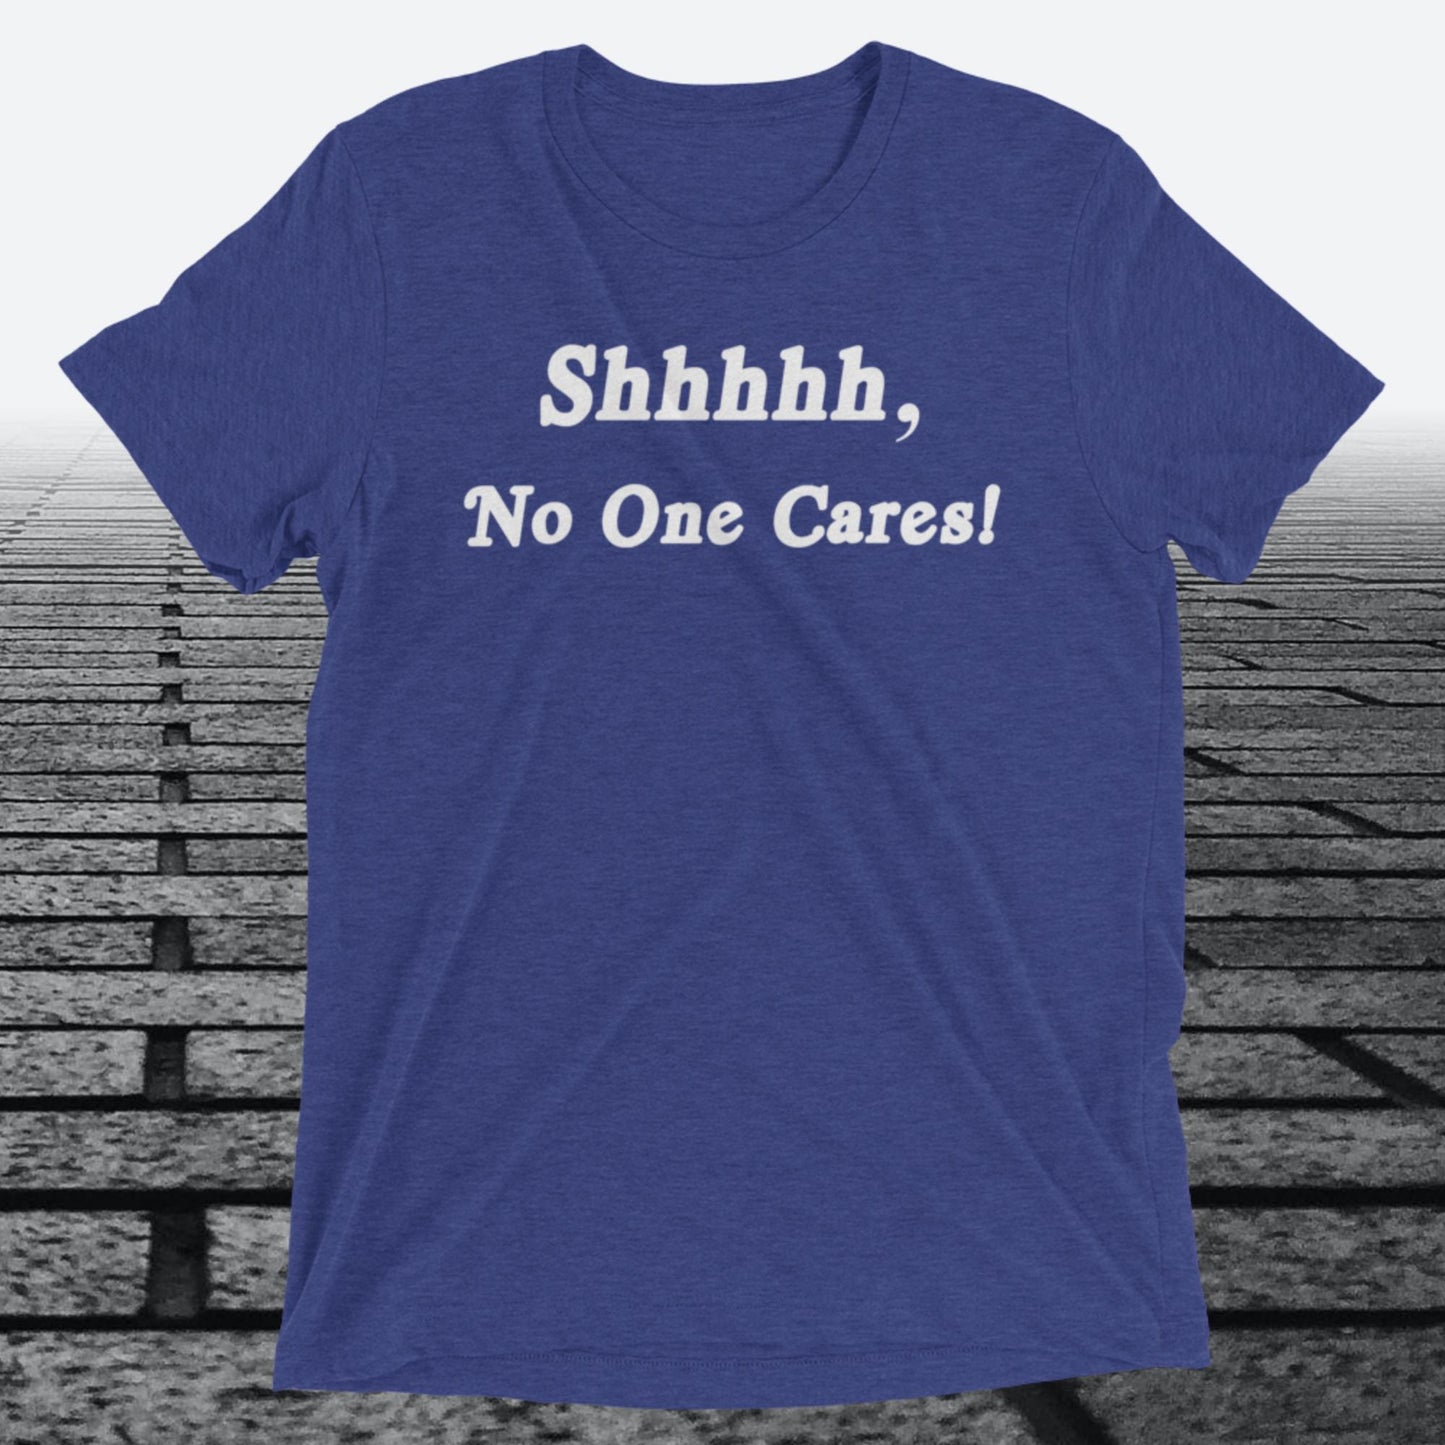 Shhhhh, No One Cares, Triblend T-shirt